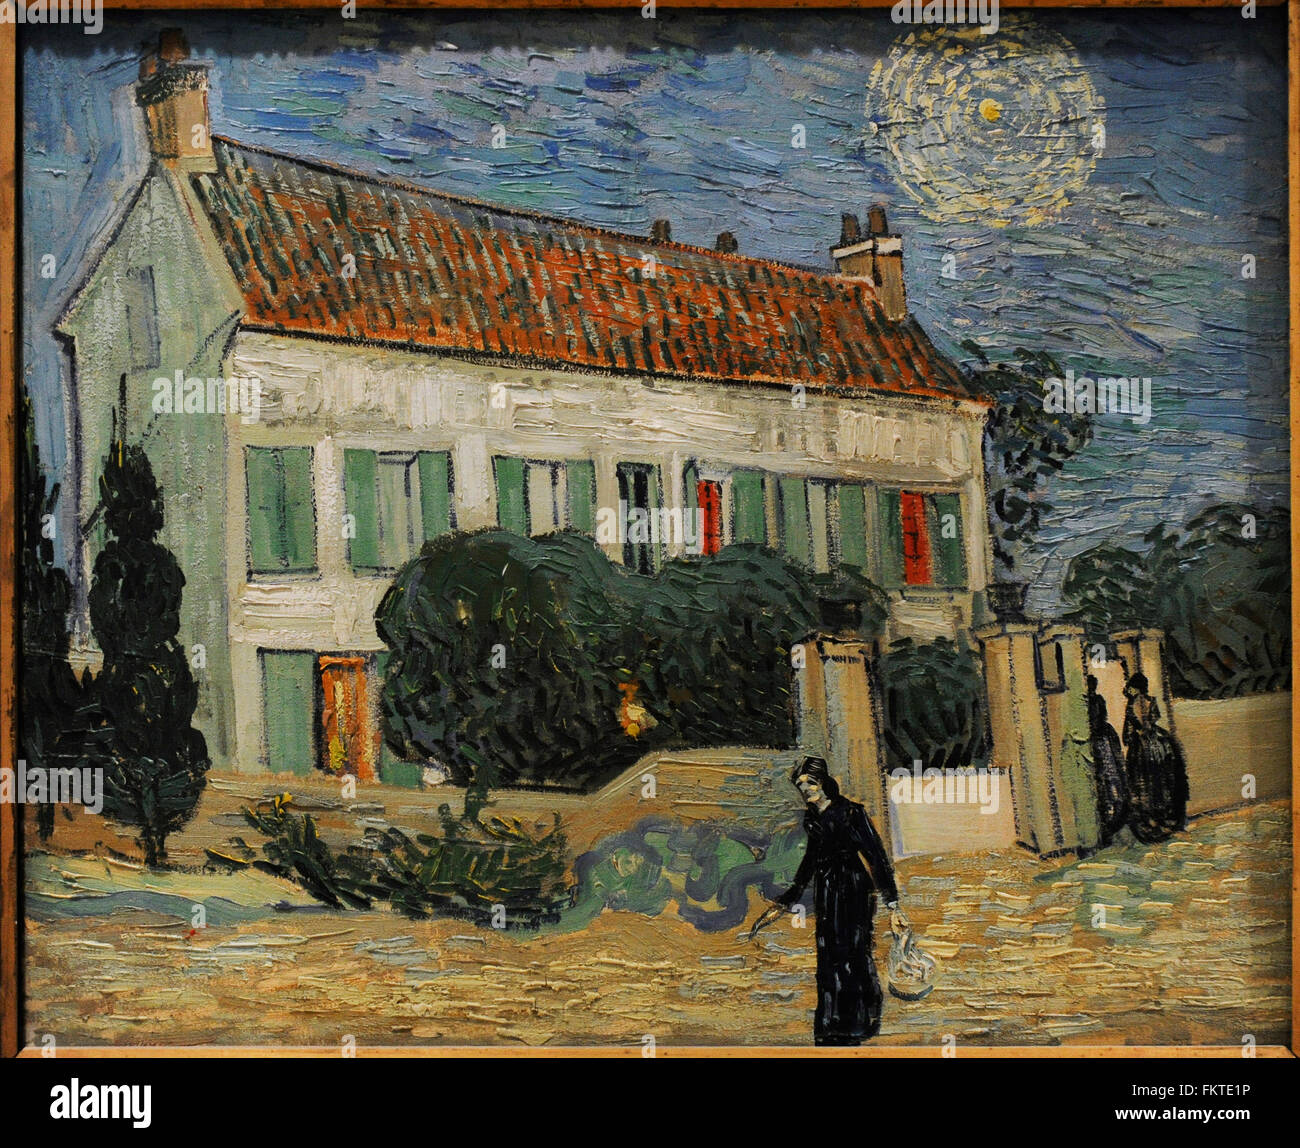 Vincent Van Gogh (1853-1890). Peintre postimpressionniste néerlandais. La Maison Blanche la nuit, 1890. Huile sur toile. Le Musée de l'Ermitage. Saint Petersburg. La Russie. Banque D'Images